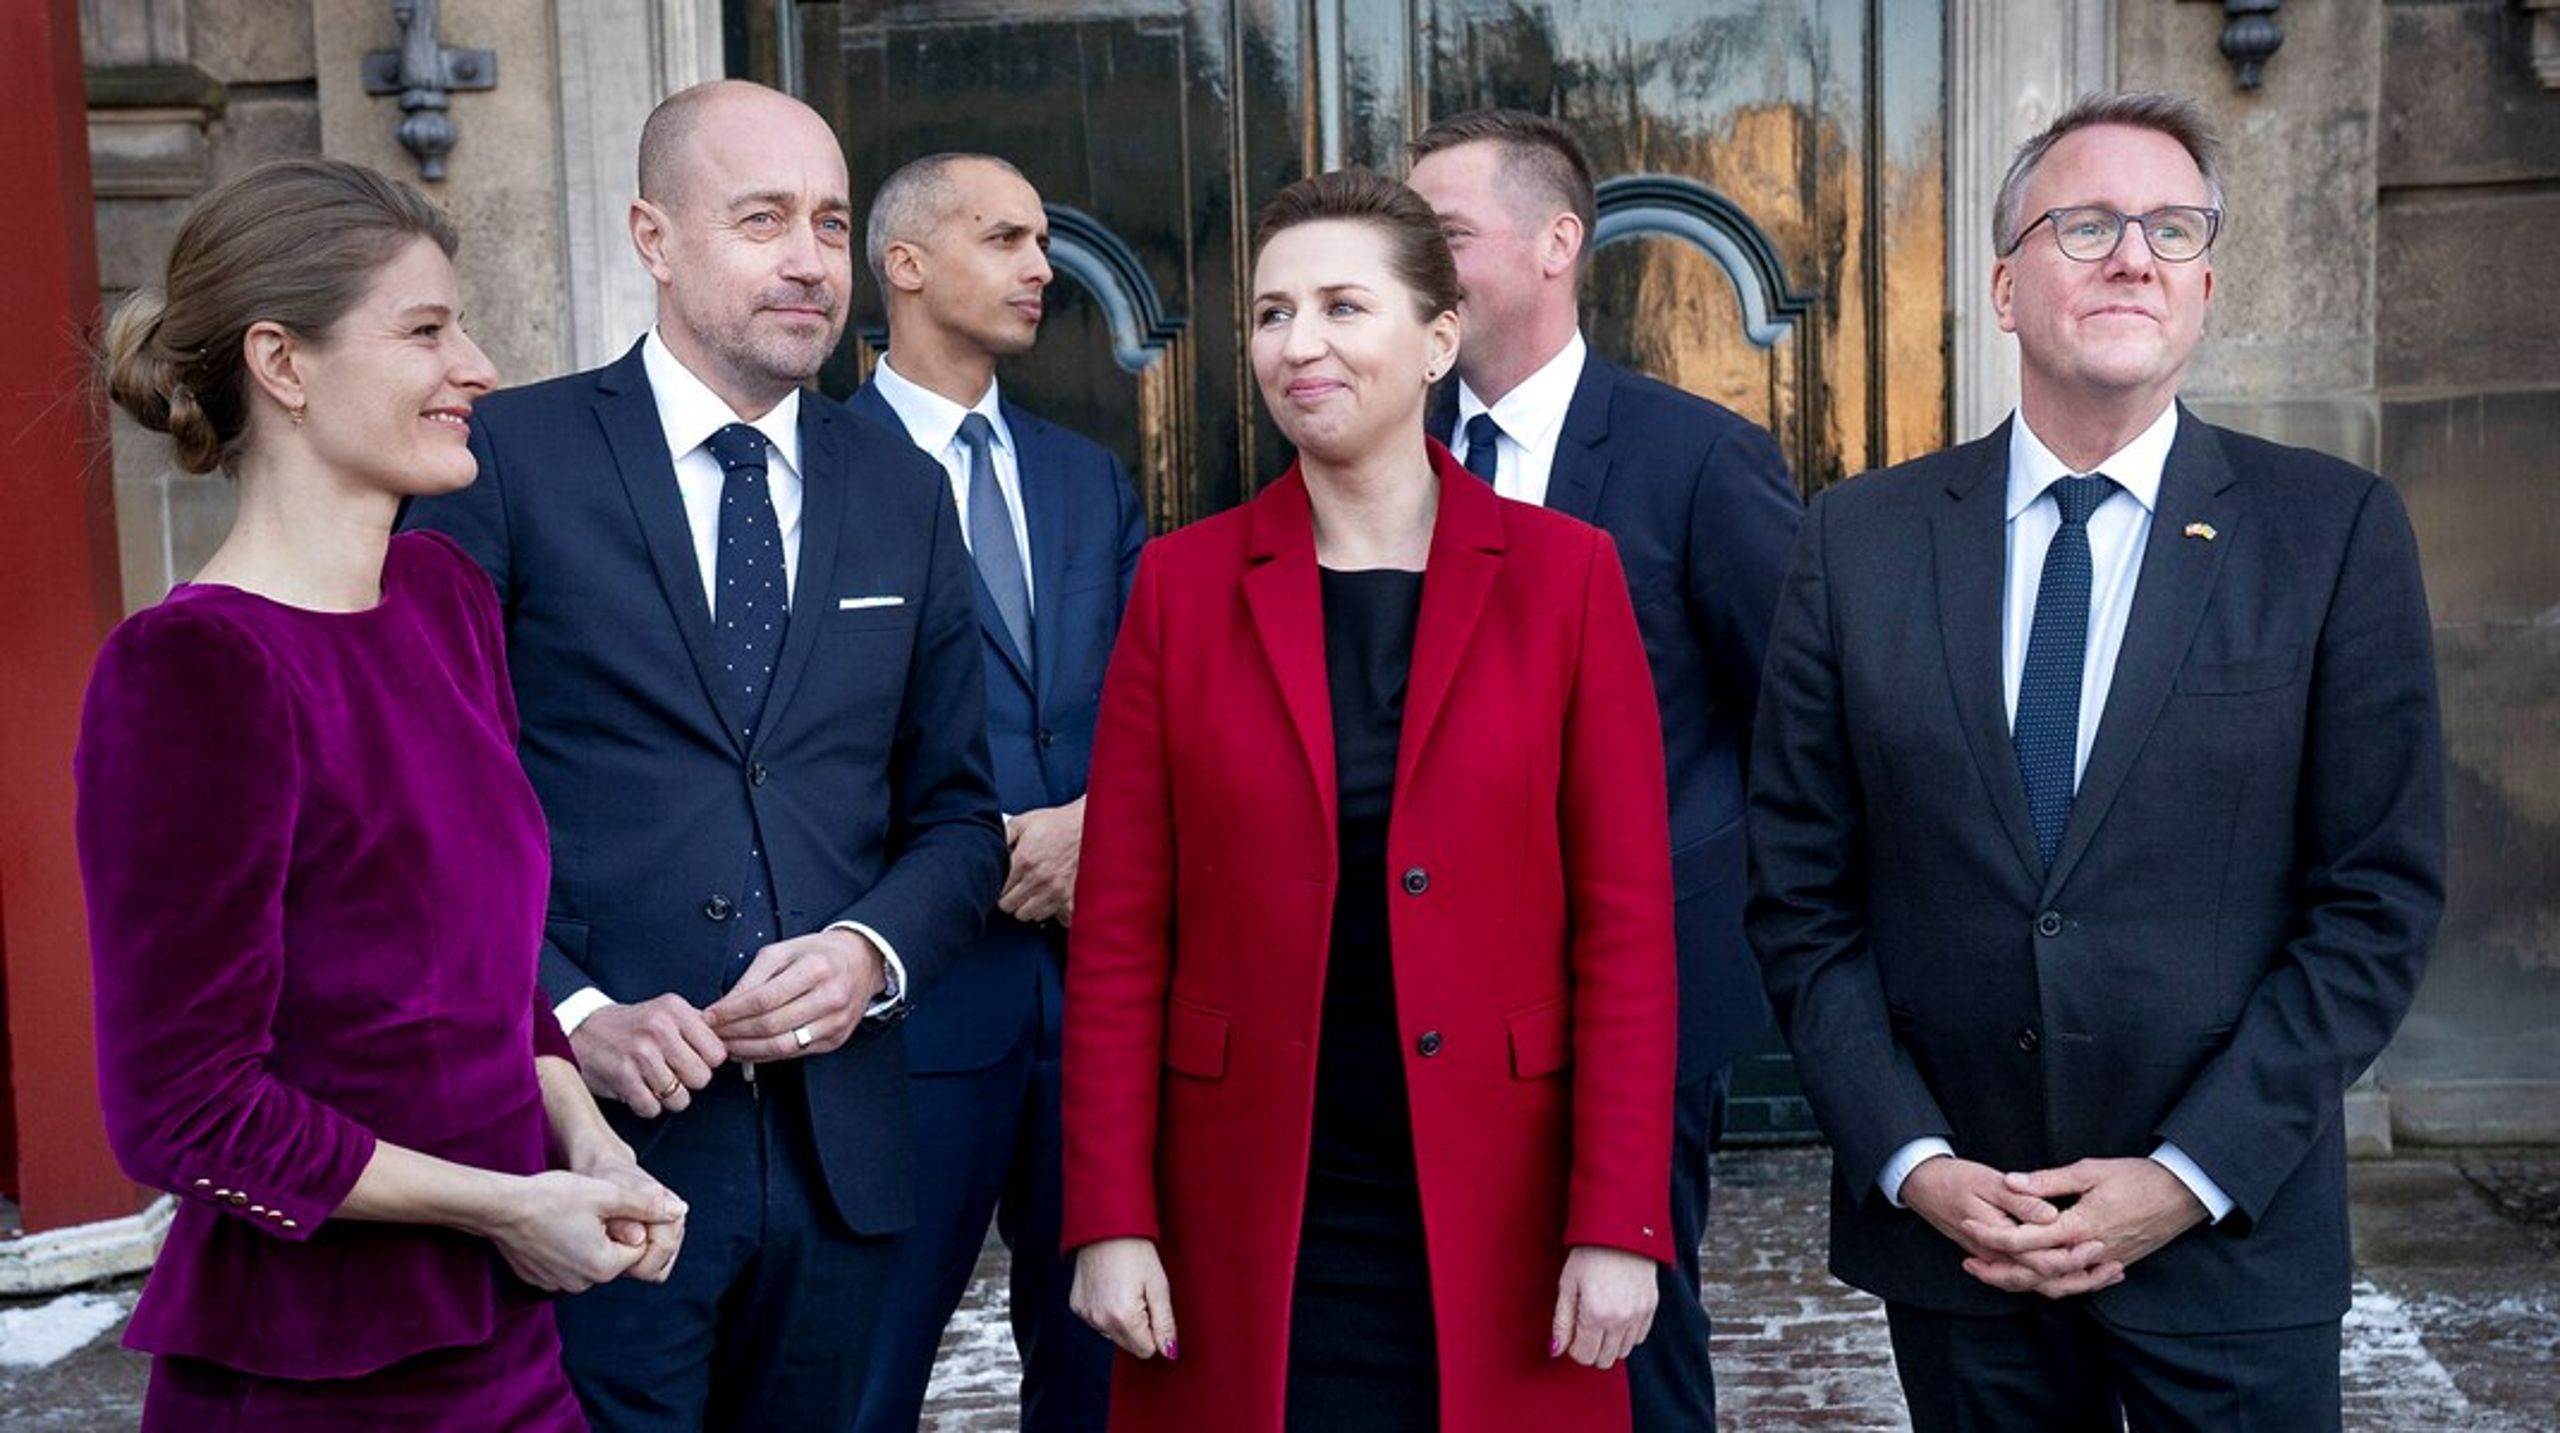 Den nye SVM-regering præsenteres på Amalienborg Slotsplads i København 15. december.